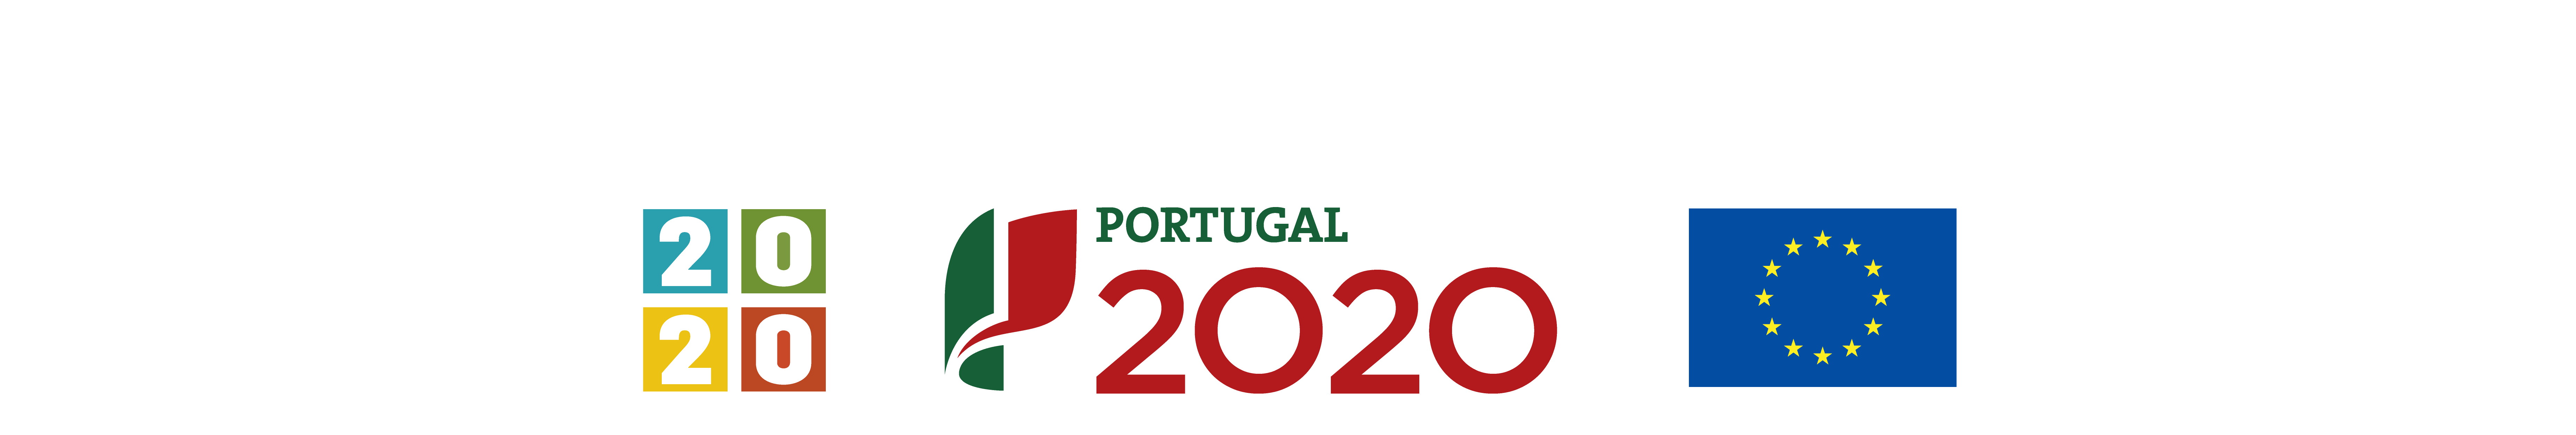 Logos Centro 2020, Portugal 2020 e União Europeia